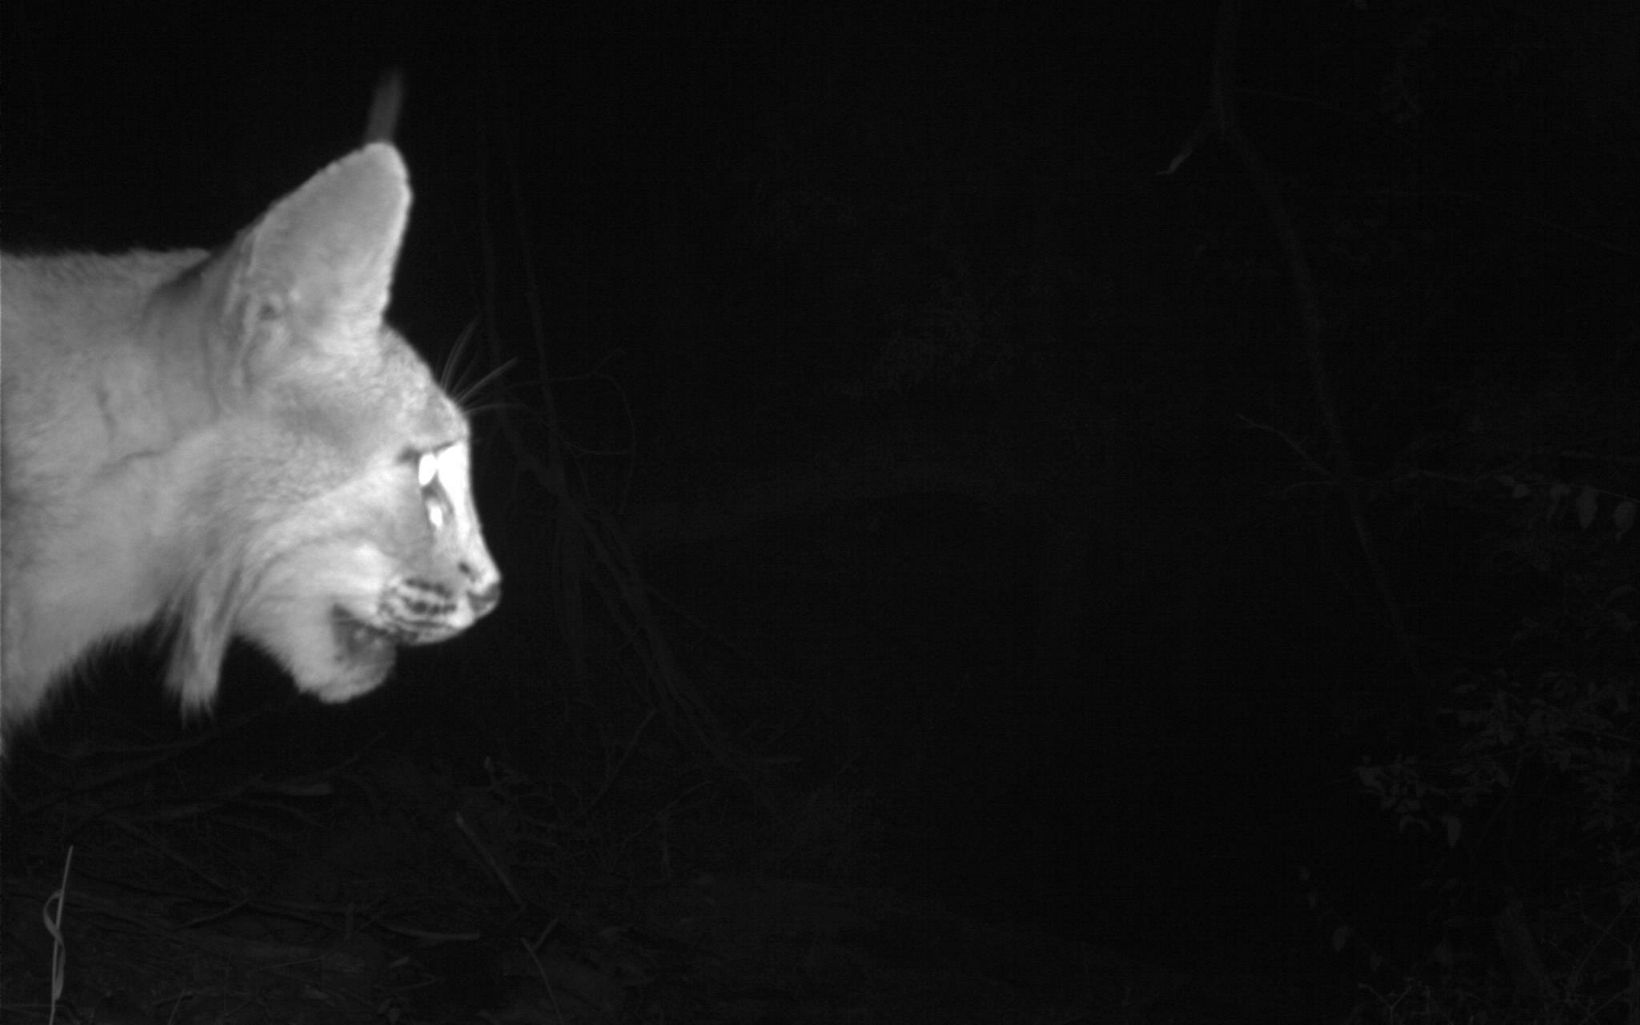 Bobcat at night.